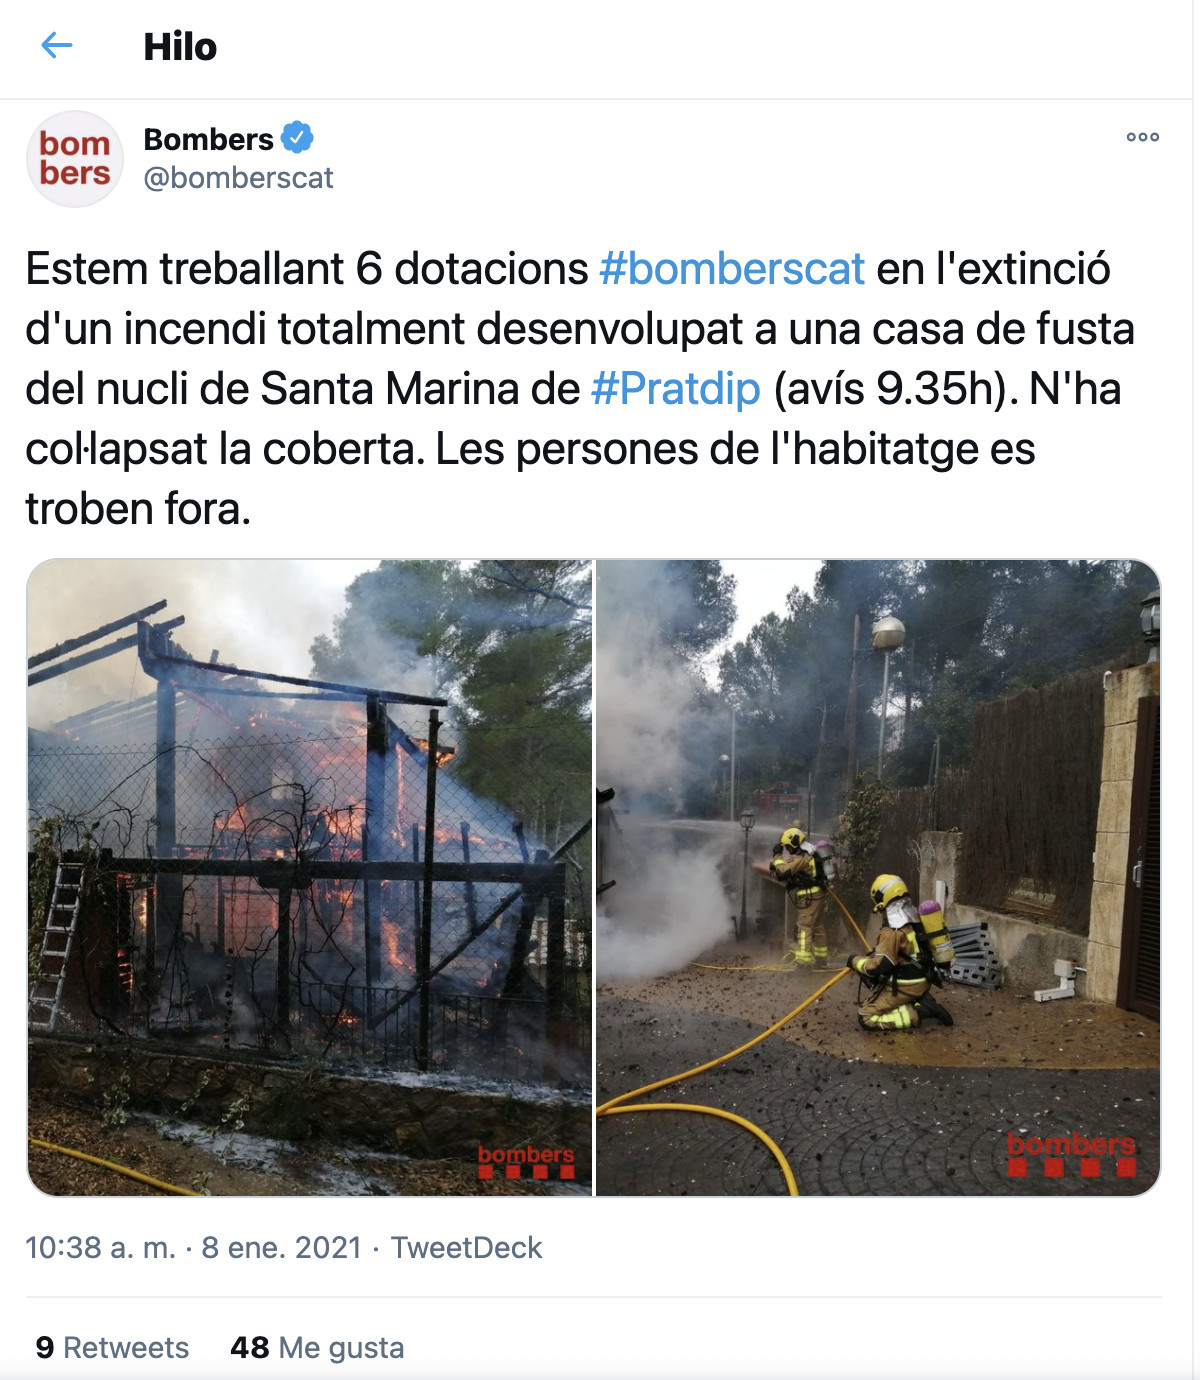 Los bomberos tratan de apagar el fuego / TWITTER